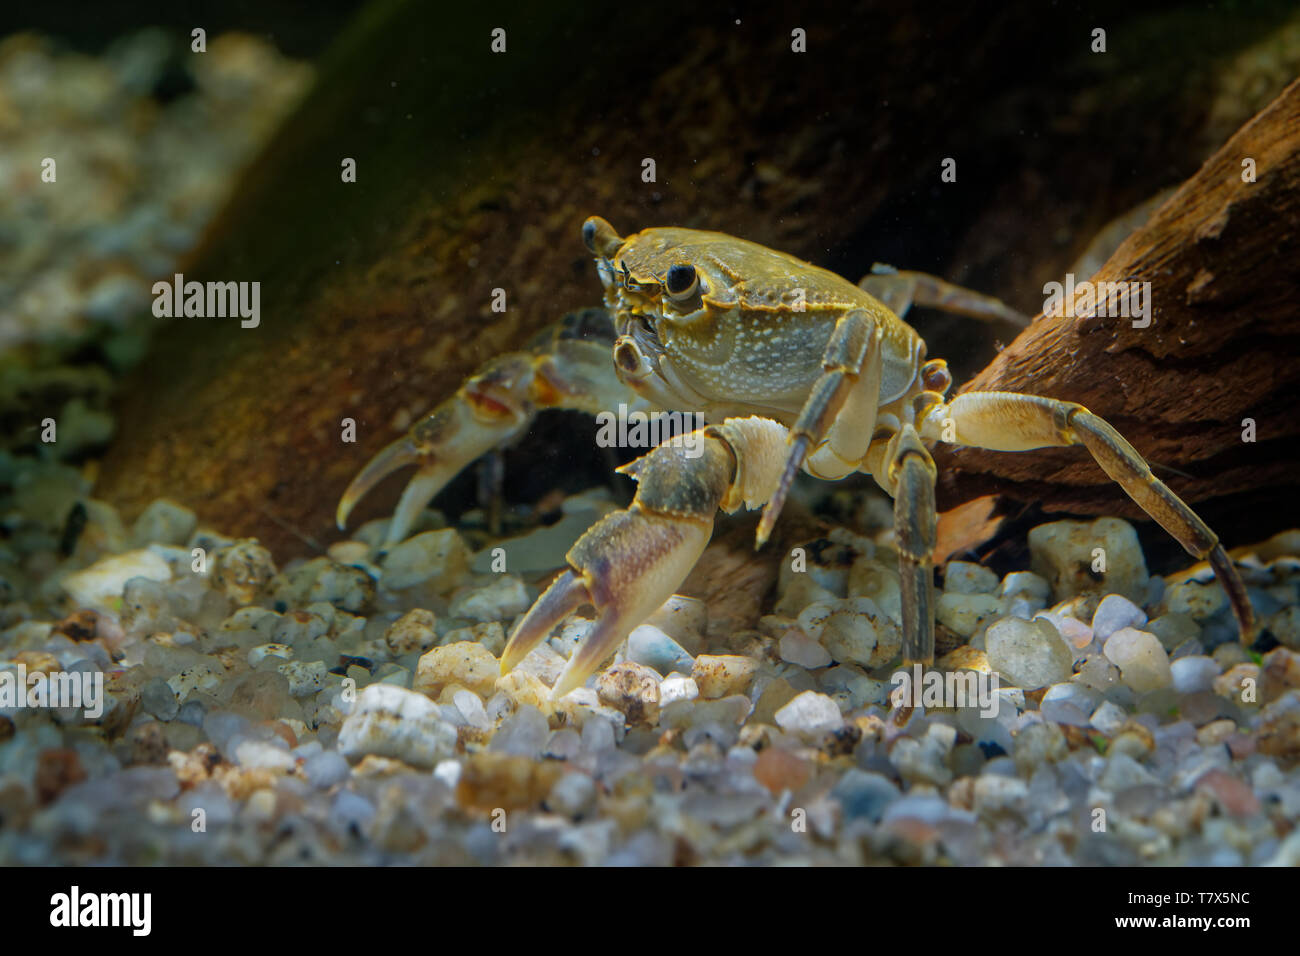 Crabe d'eau douce - Potamon fluviatile vivant dans les ruisseaux, rivières et lacs du sud de l'Europe. Banque D'Images